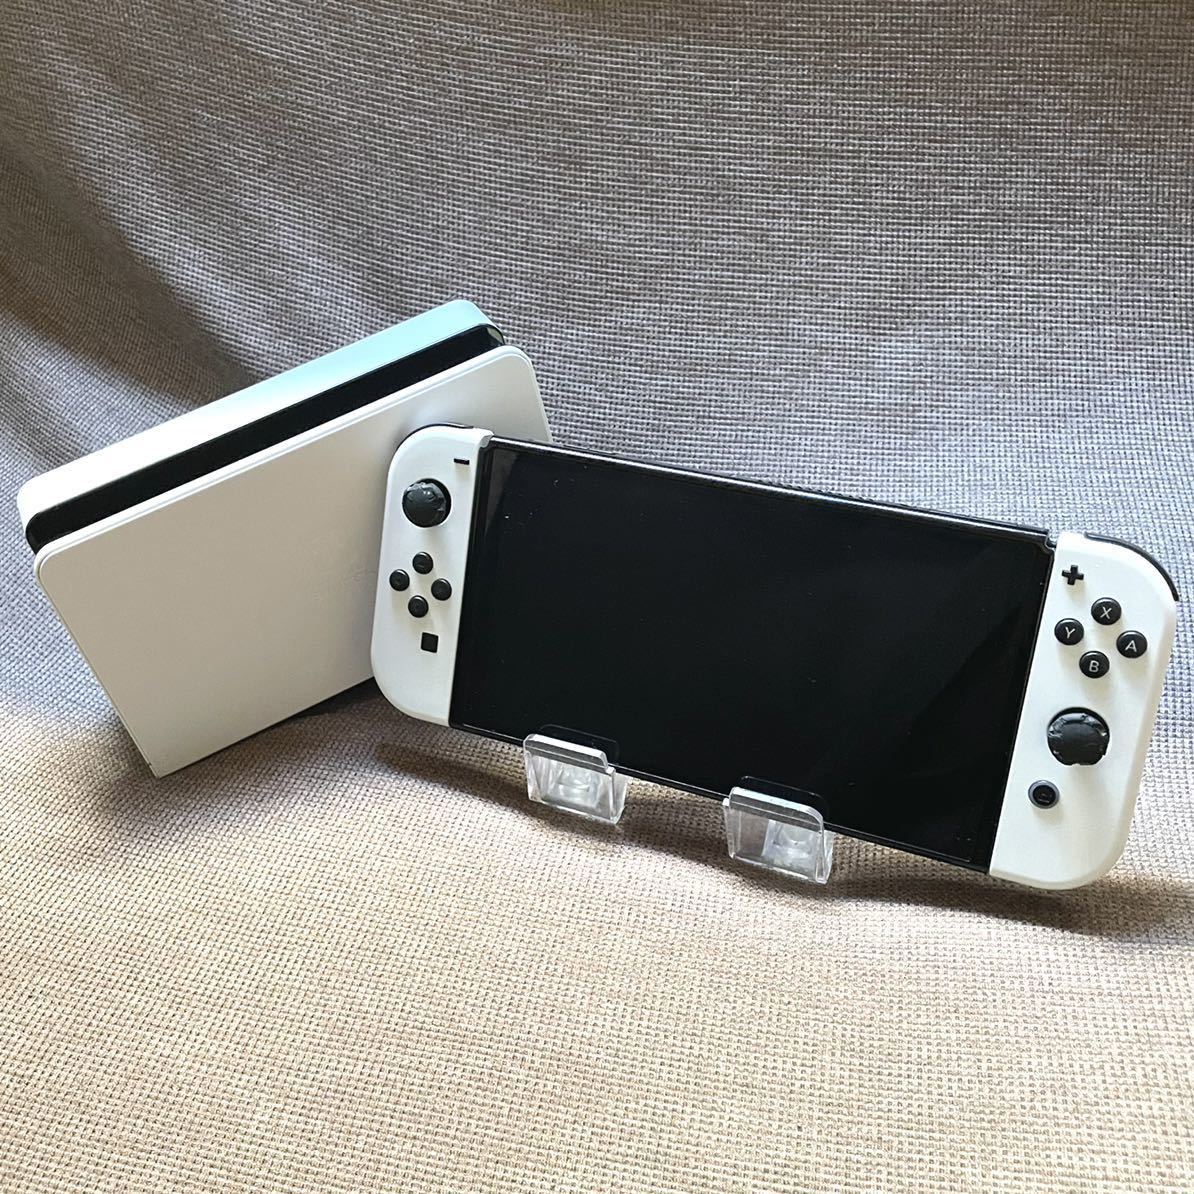 有機ELモデル】Nintendo Switch ホワイト White 白 ニンテンドー